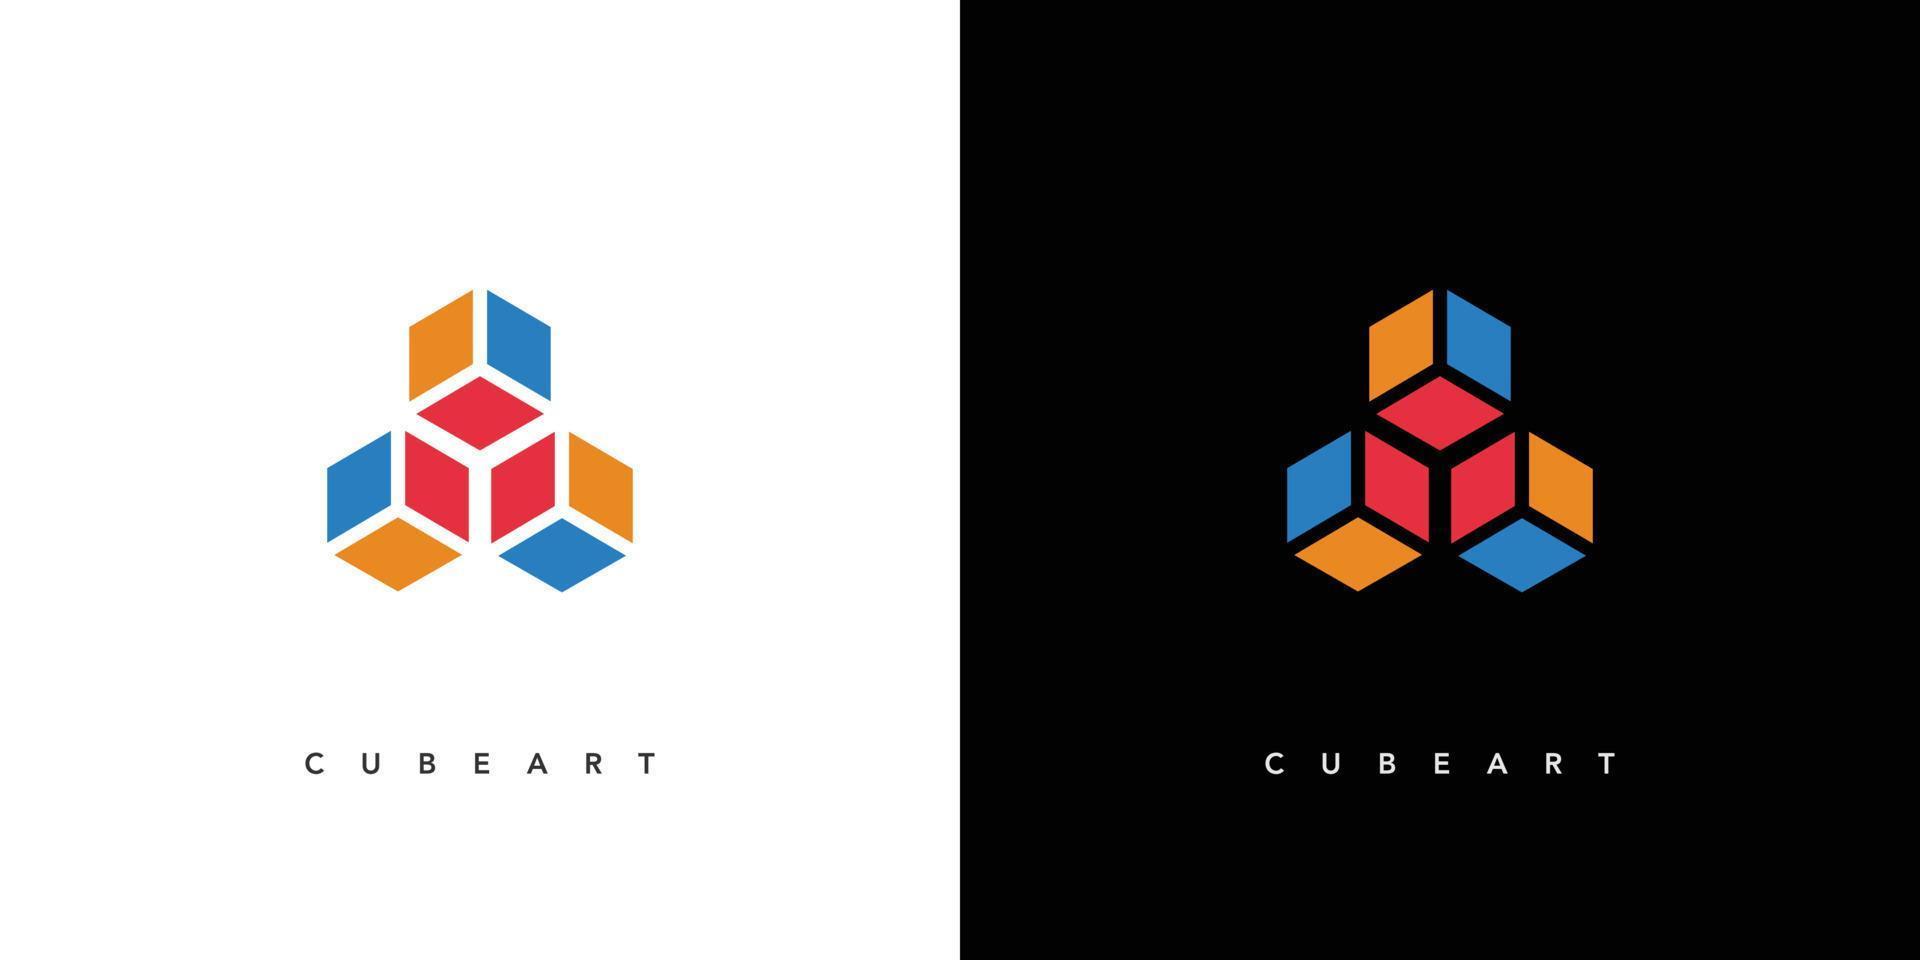 création de logo d'art cube moderne et attrayant vecteur